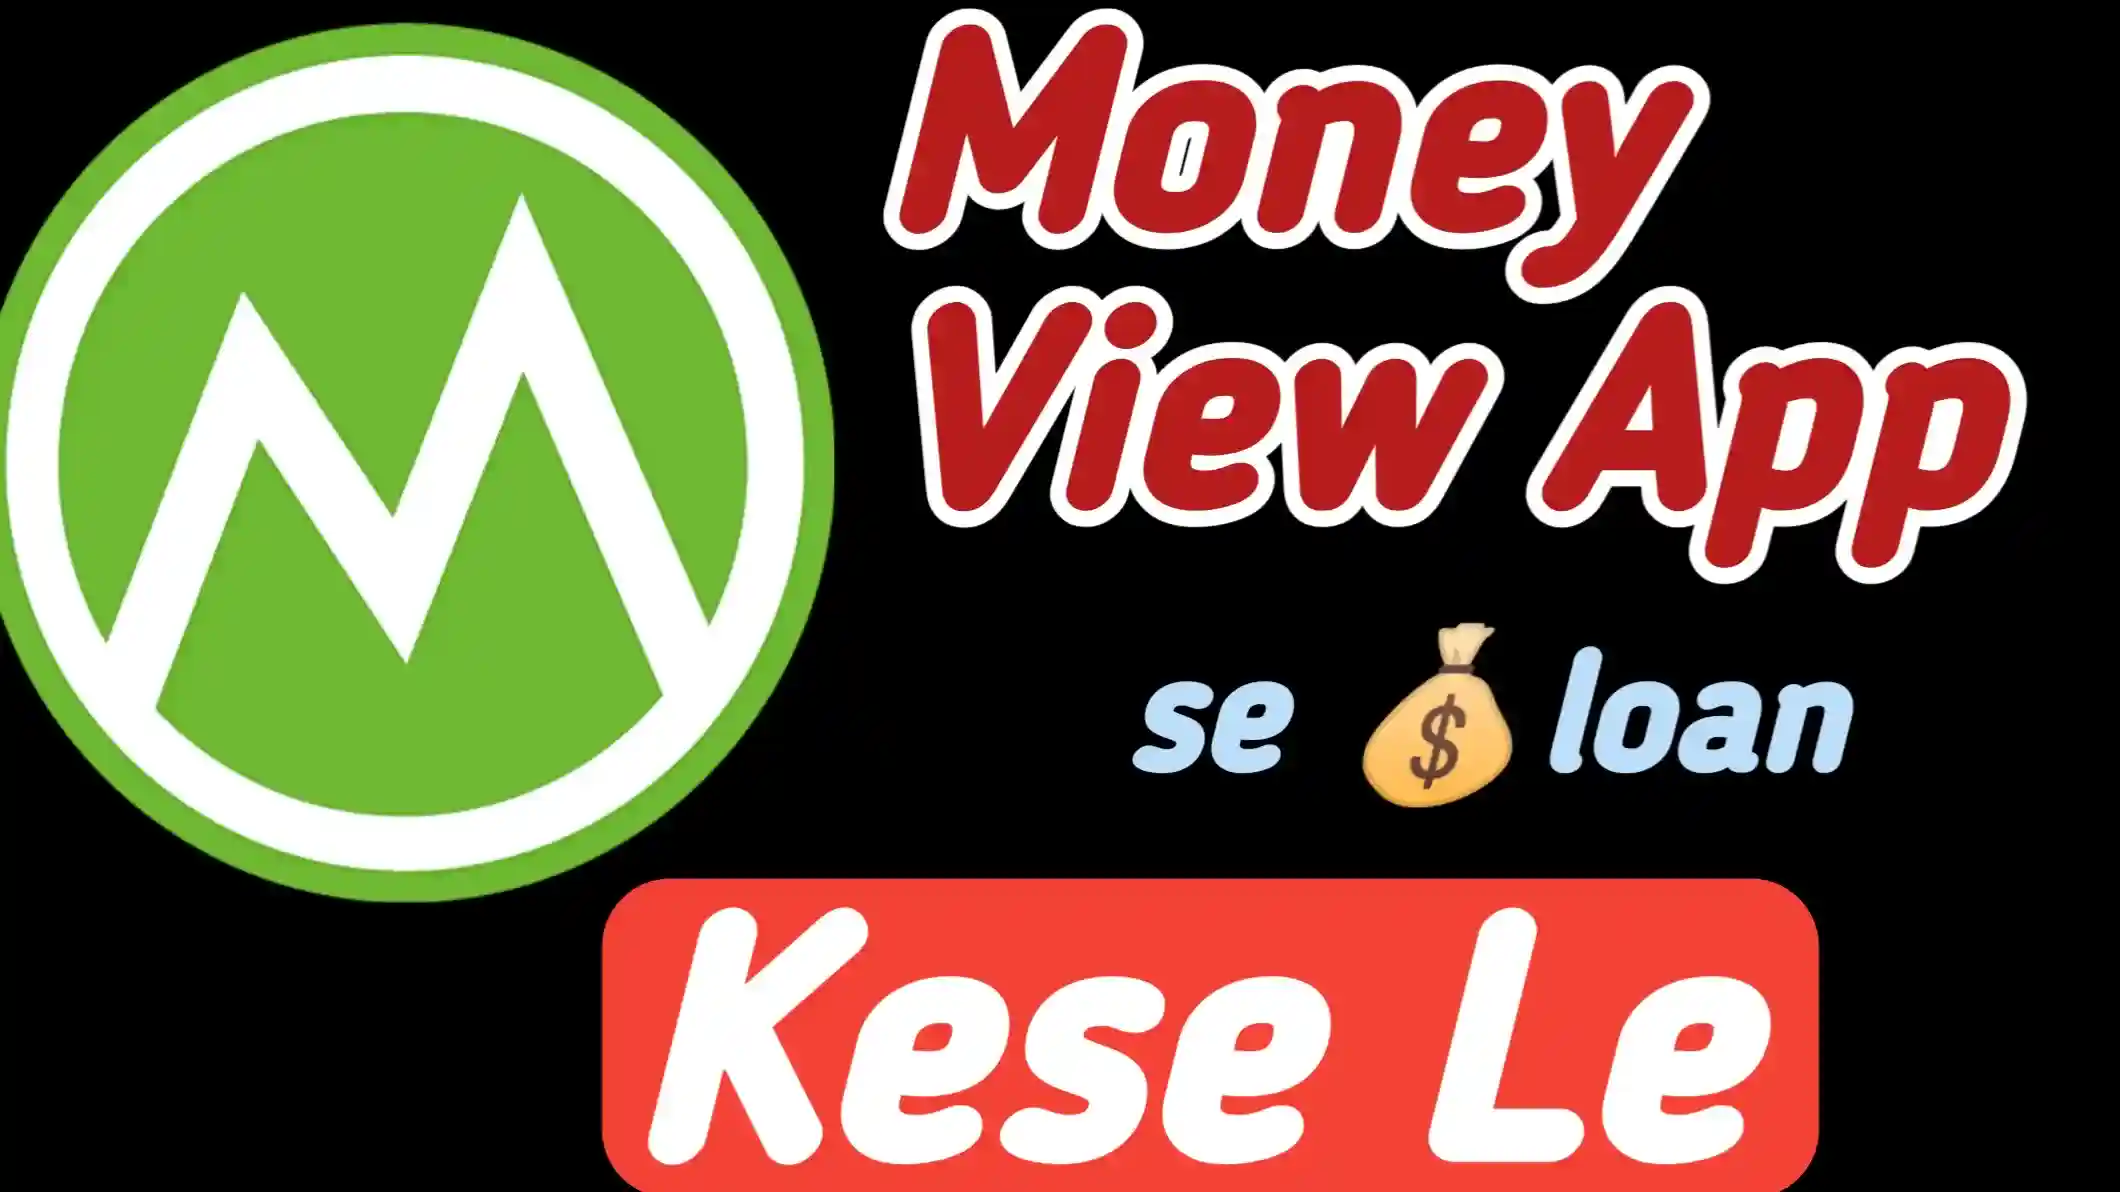 Money View App Se Loan Kaise Le